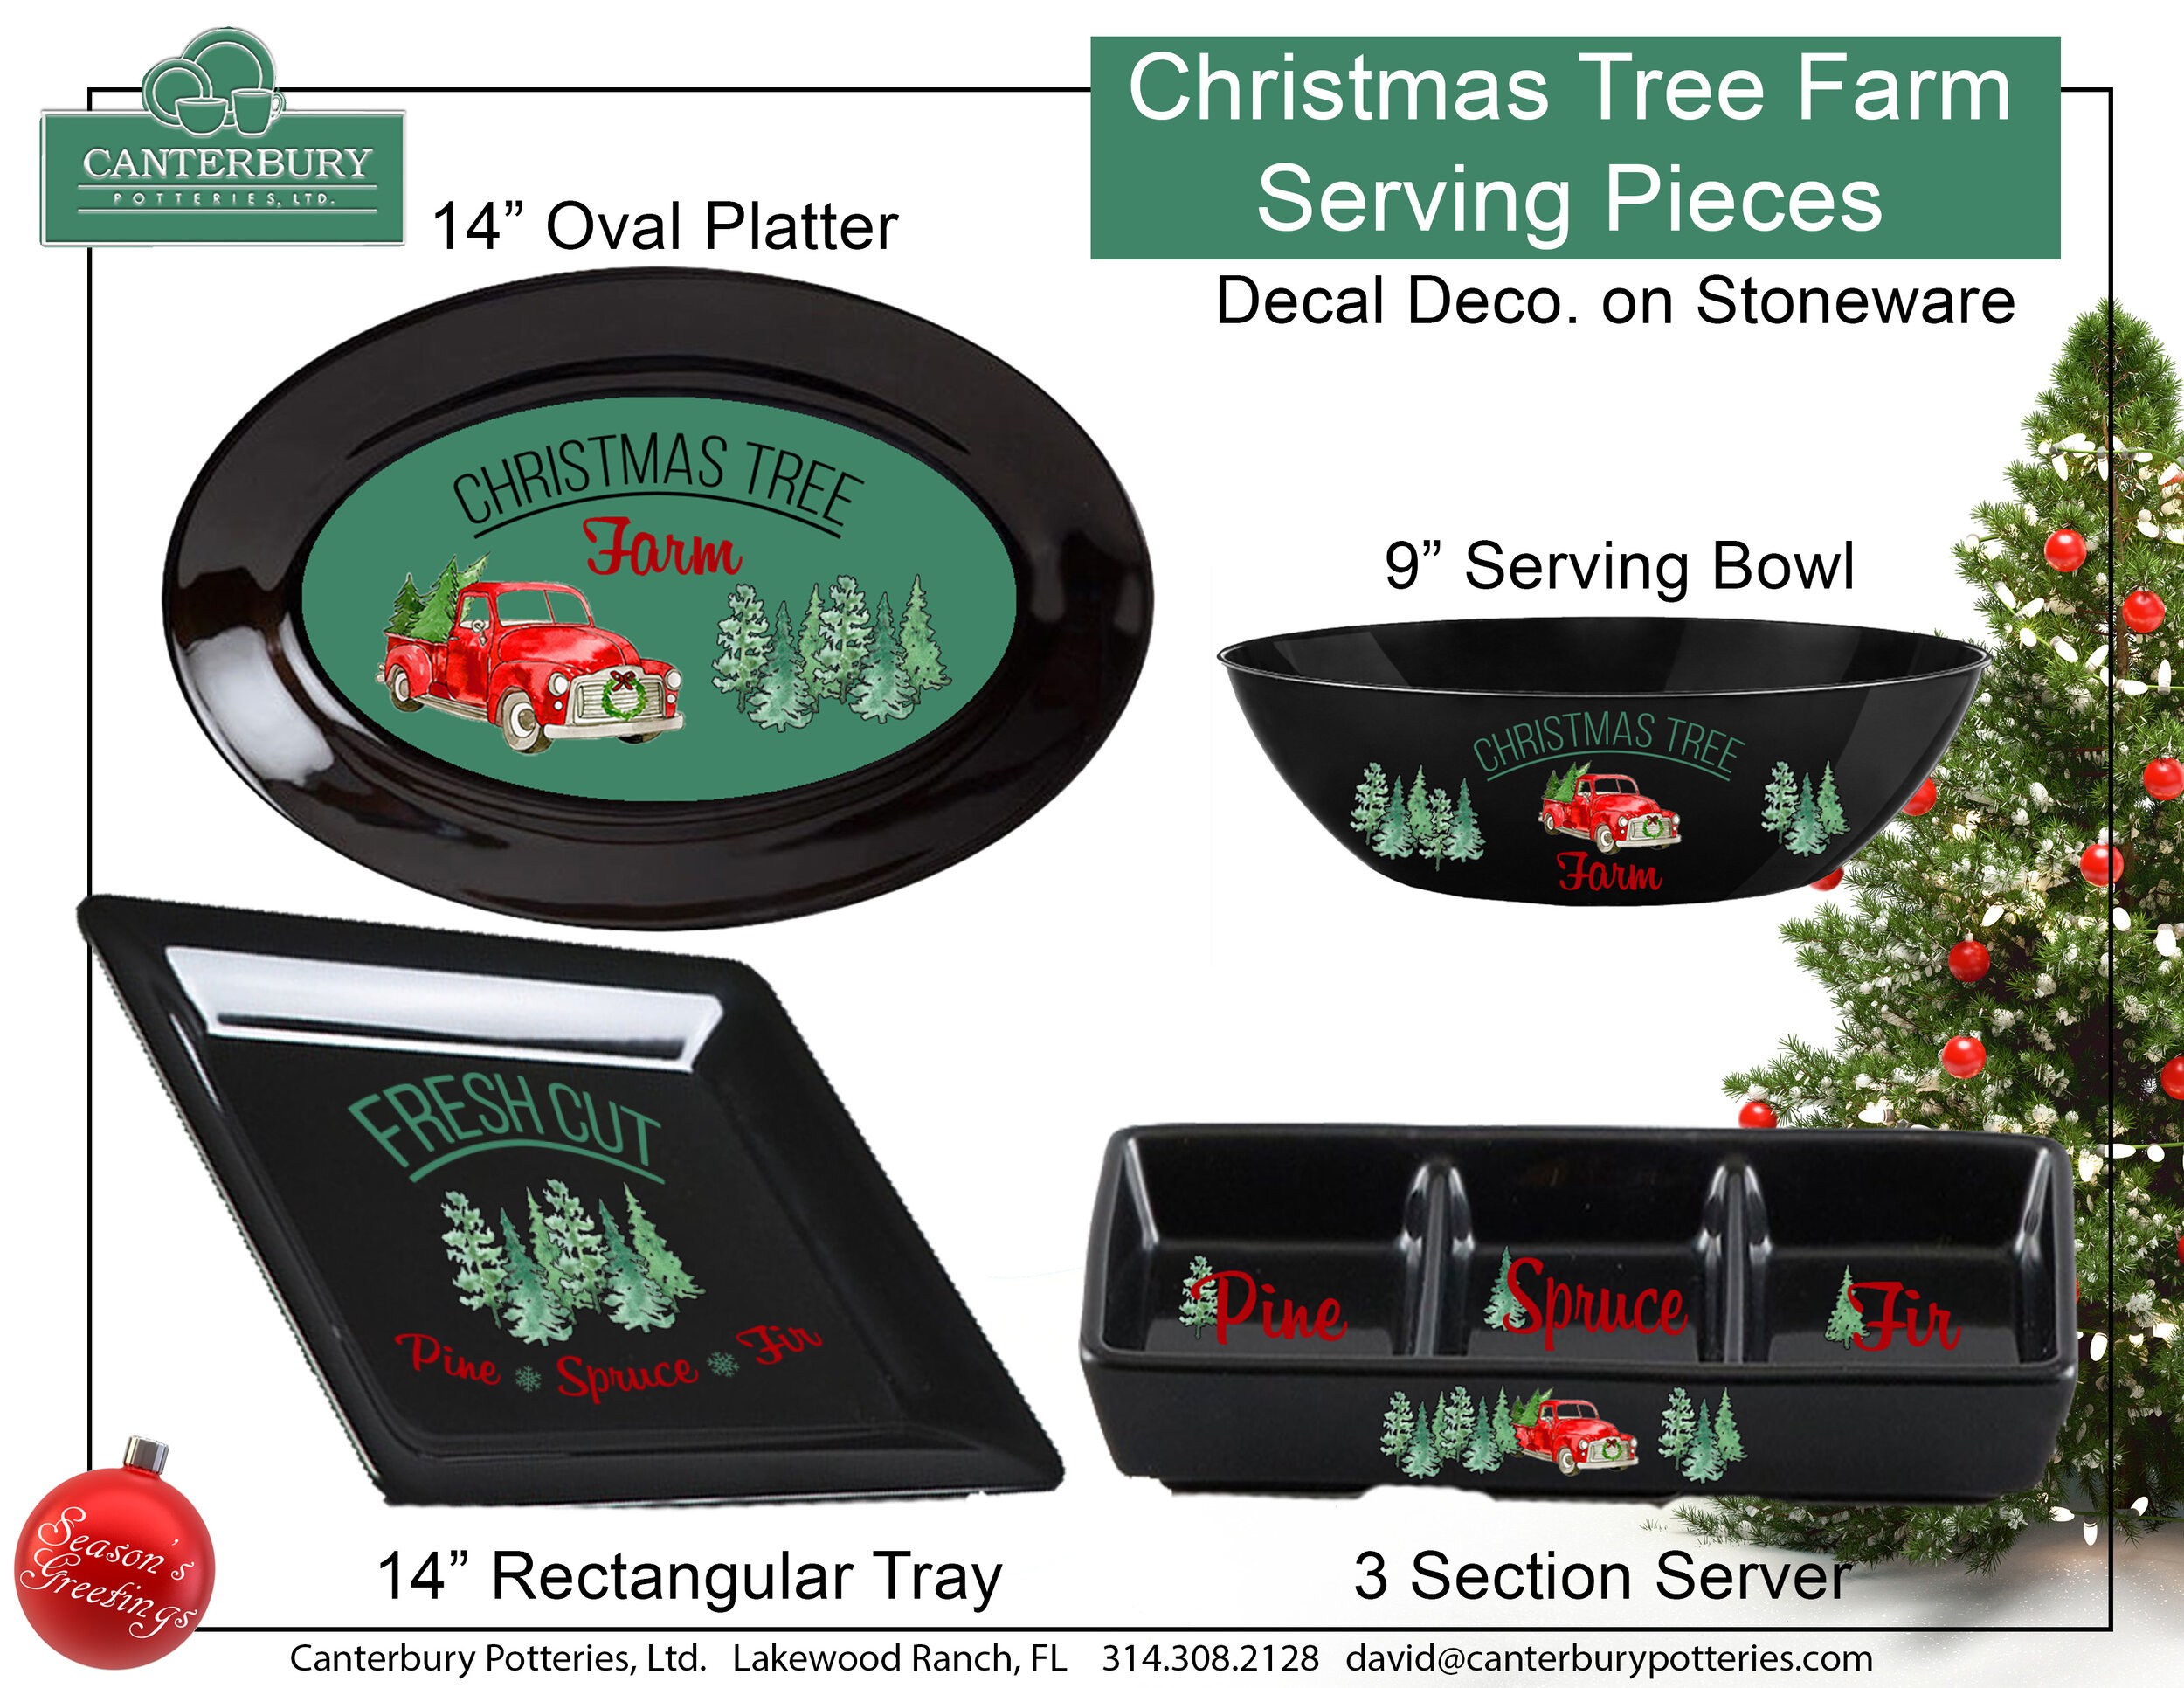 Christmas Tree Farm Serving Pieces.jpg